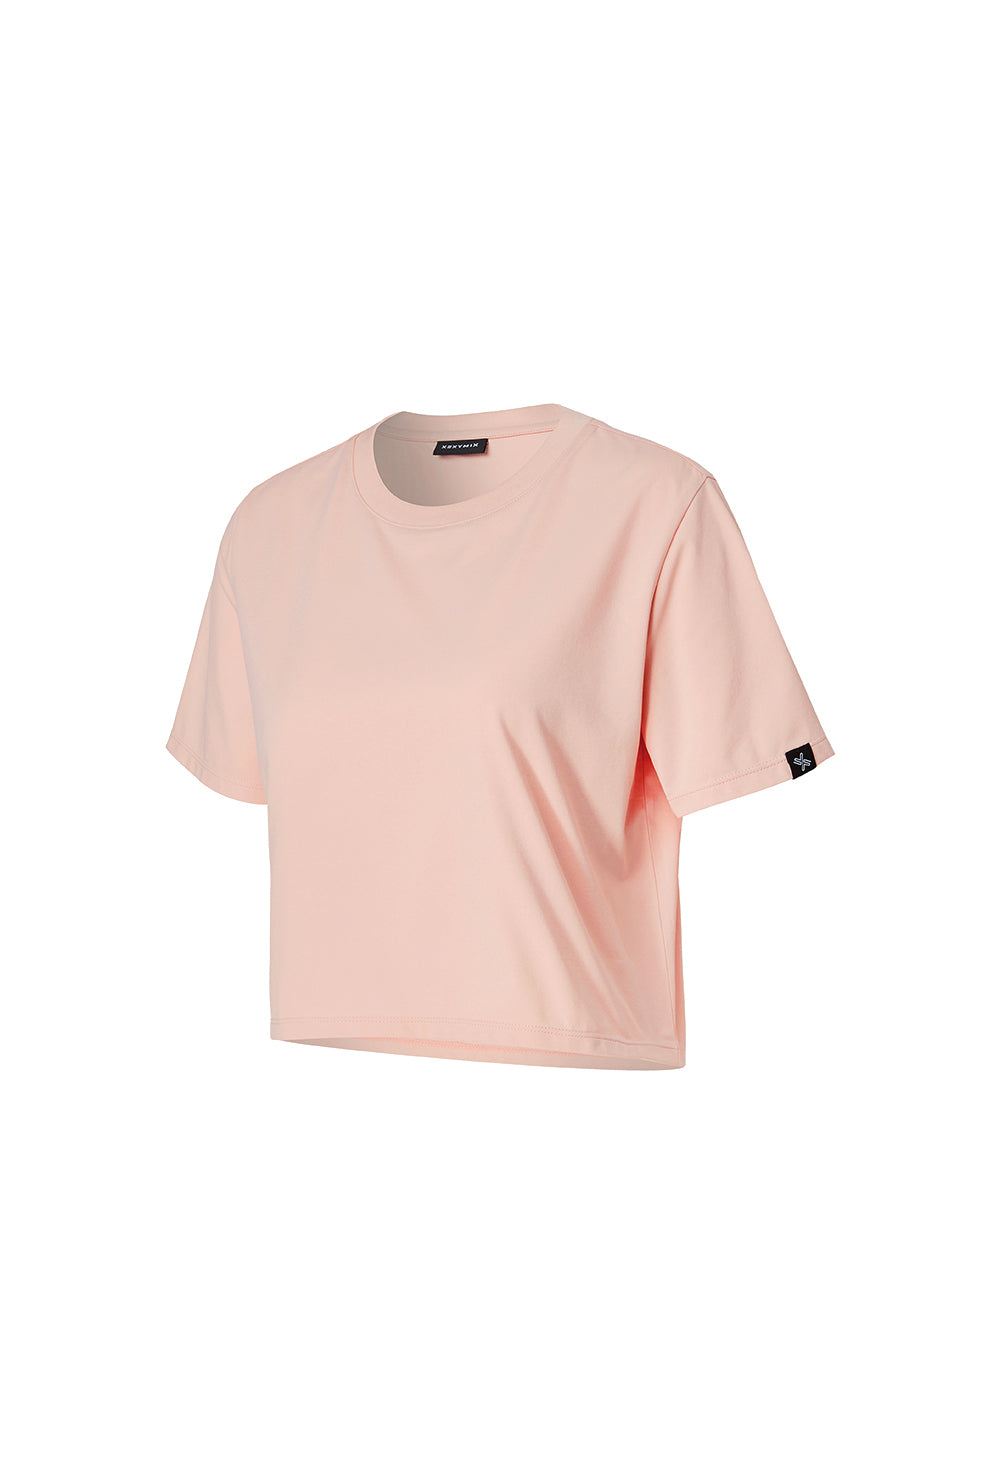 Basic Scratch Crop T-Shirt - Mist Pink